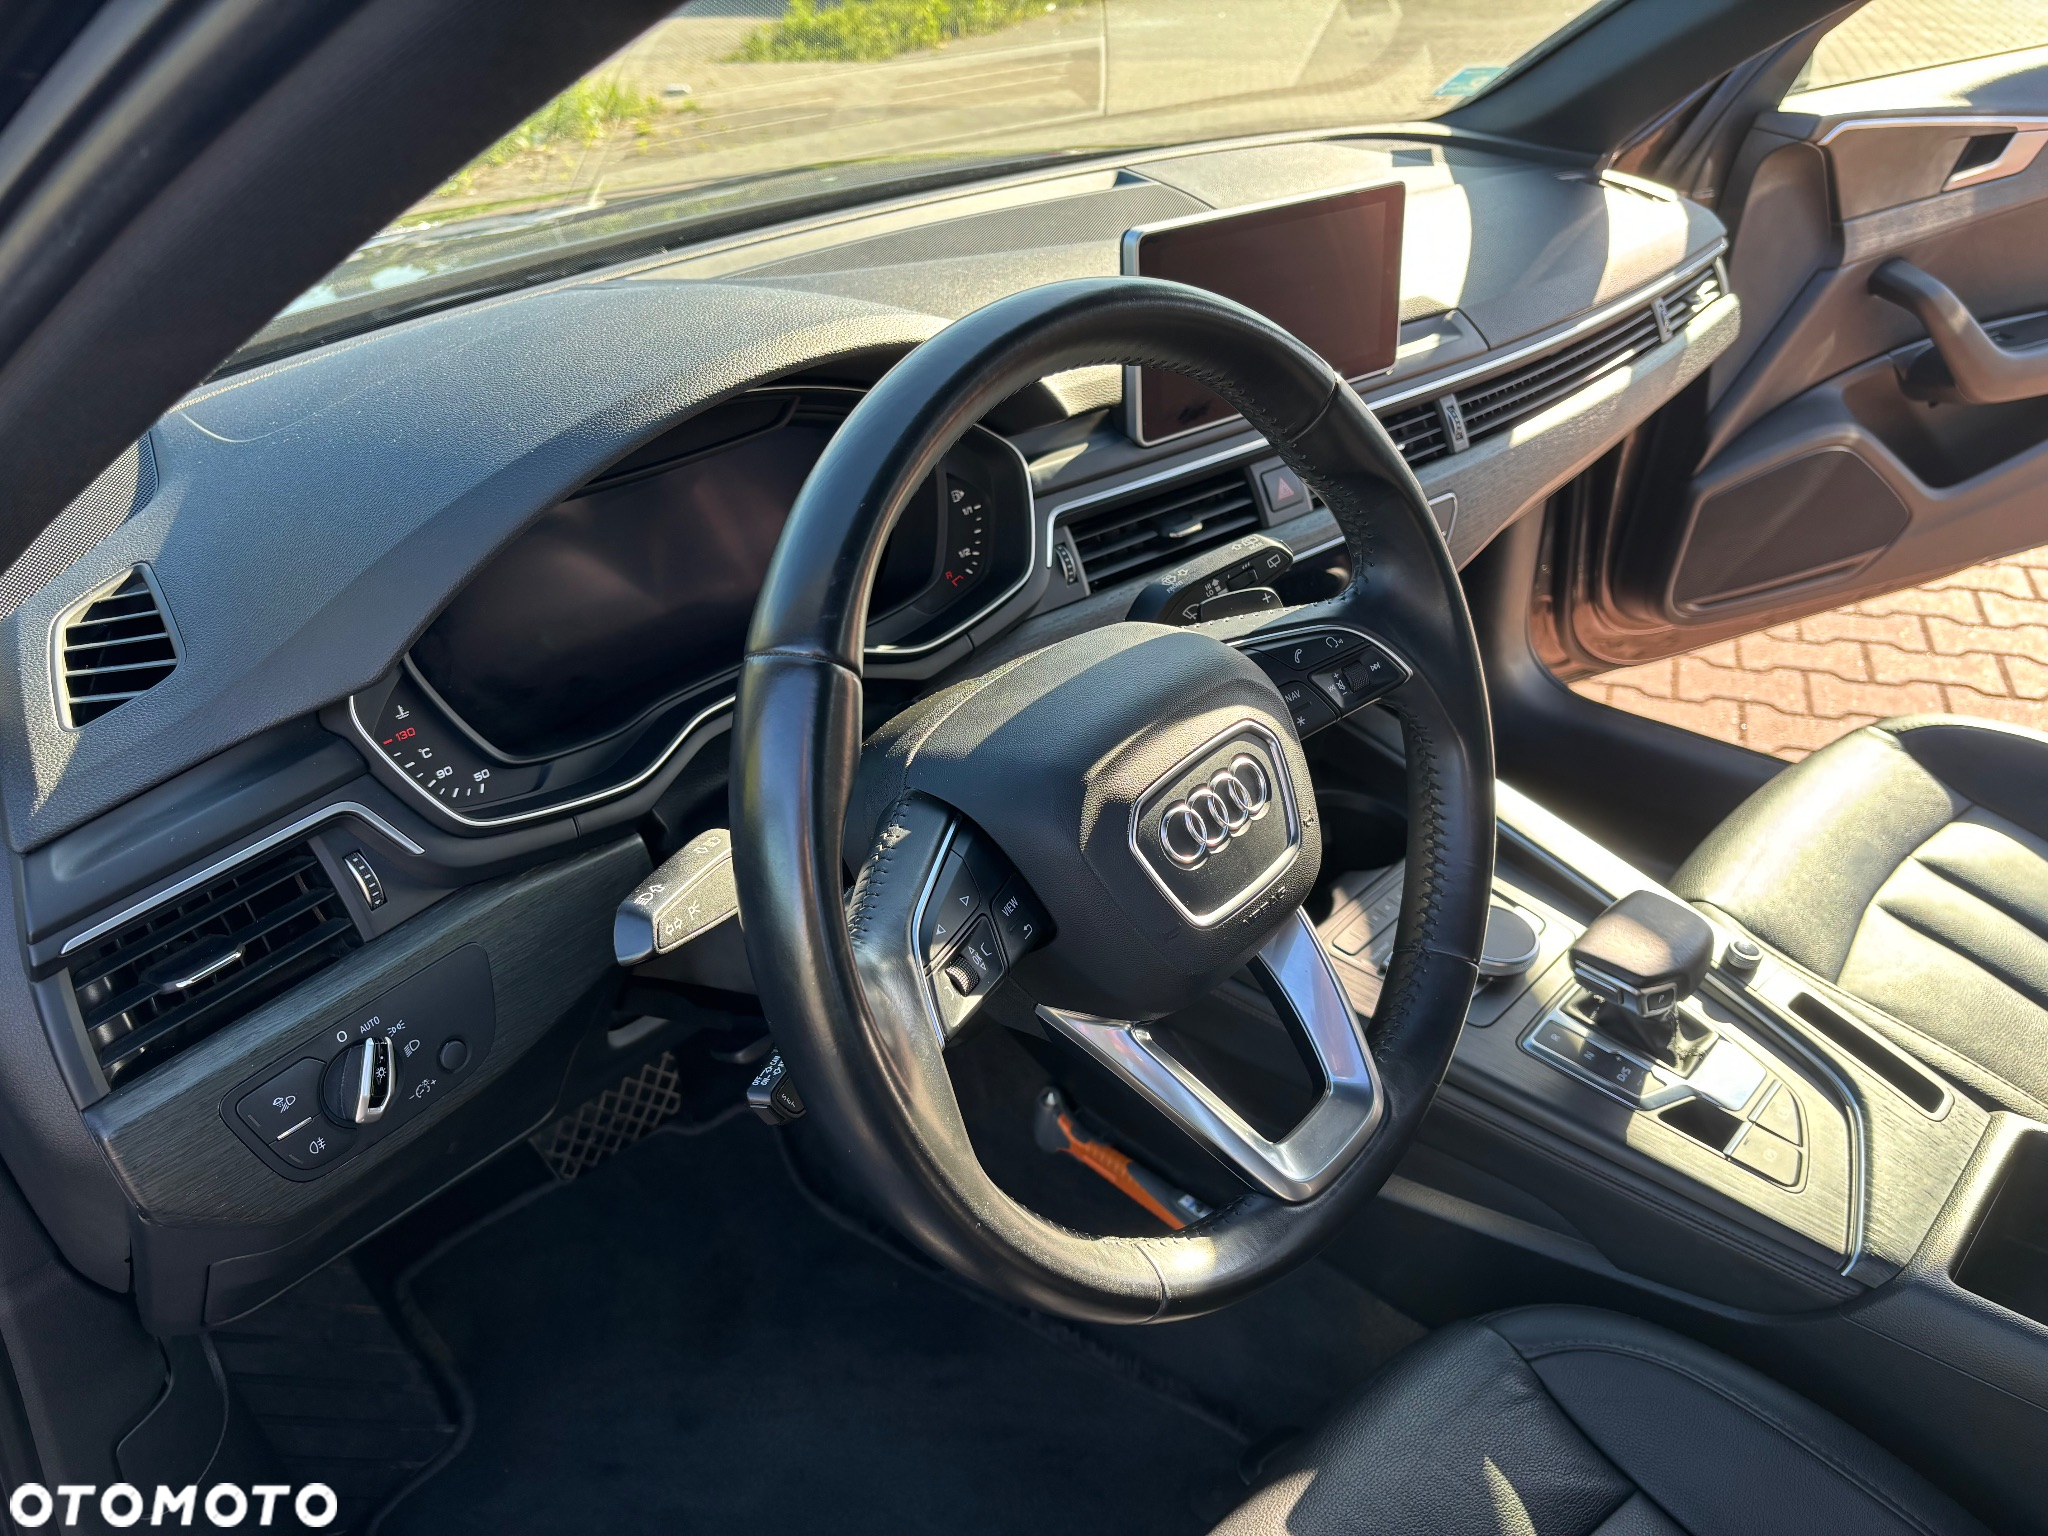 Audi A4 2.0 TDI Design S tronic - 15